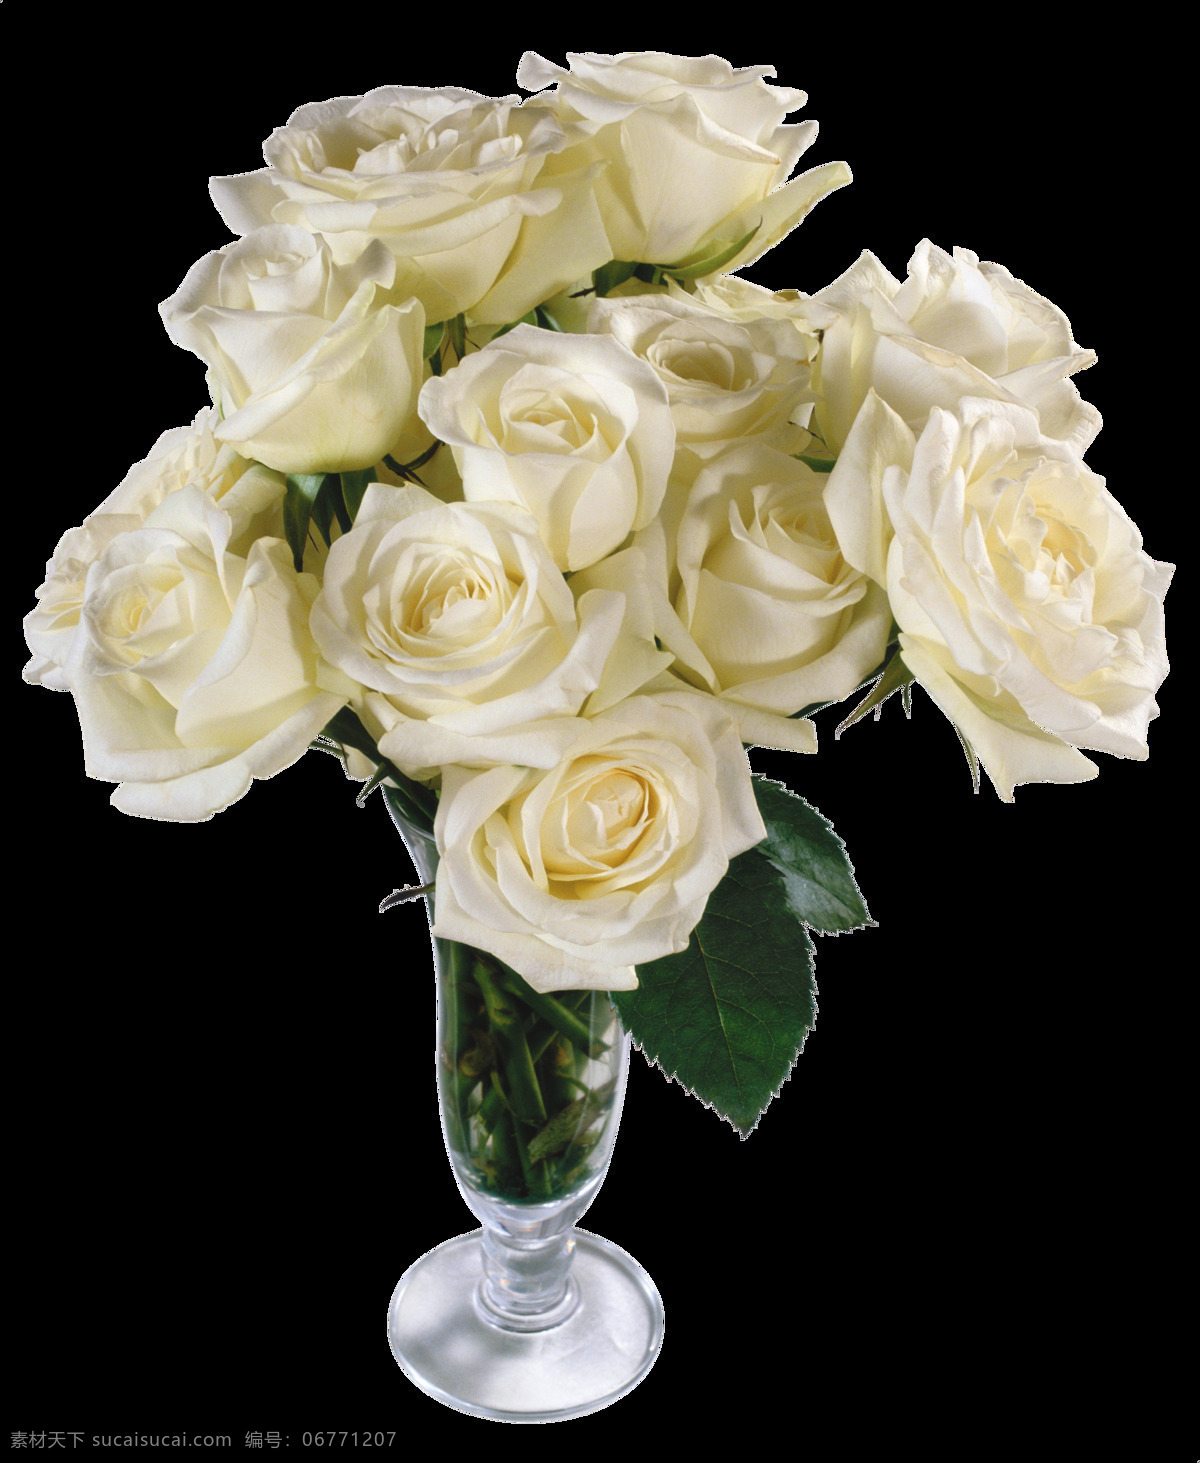 白 玫瑰 插花 免 抠 透明 图 层 蓝白玫瑰 雪白玫瑰 一朵白玫瑰 白玫瑰花图片 唯美 法国 粉白玫瑰 白玫瑰图片 白玫瑰海报 大全 白玫瑰 玫瑰花图片